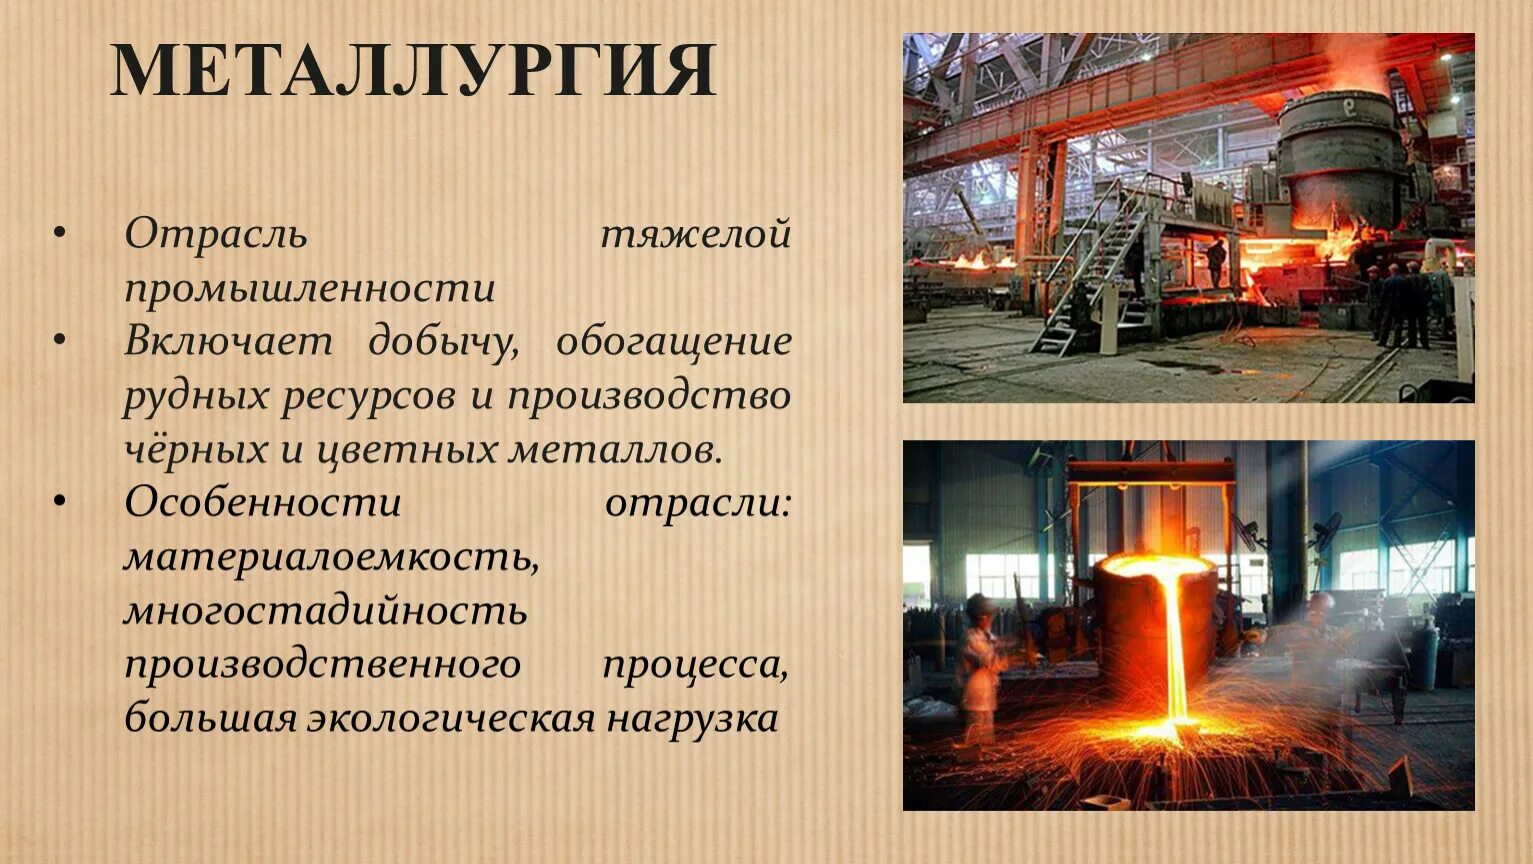 В каком городе развита металлургия. Металлургия. Металлургия промышленность. Отрасли металлургии. Металлургия отрасль промышленности.